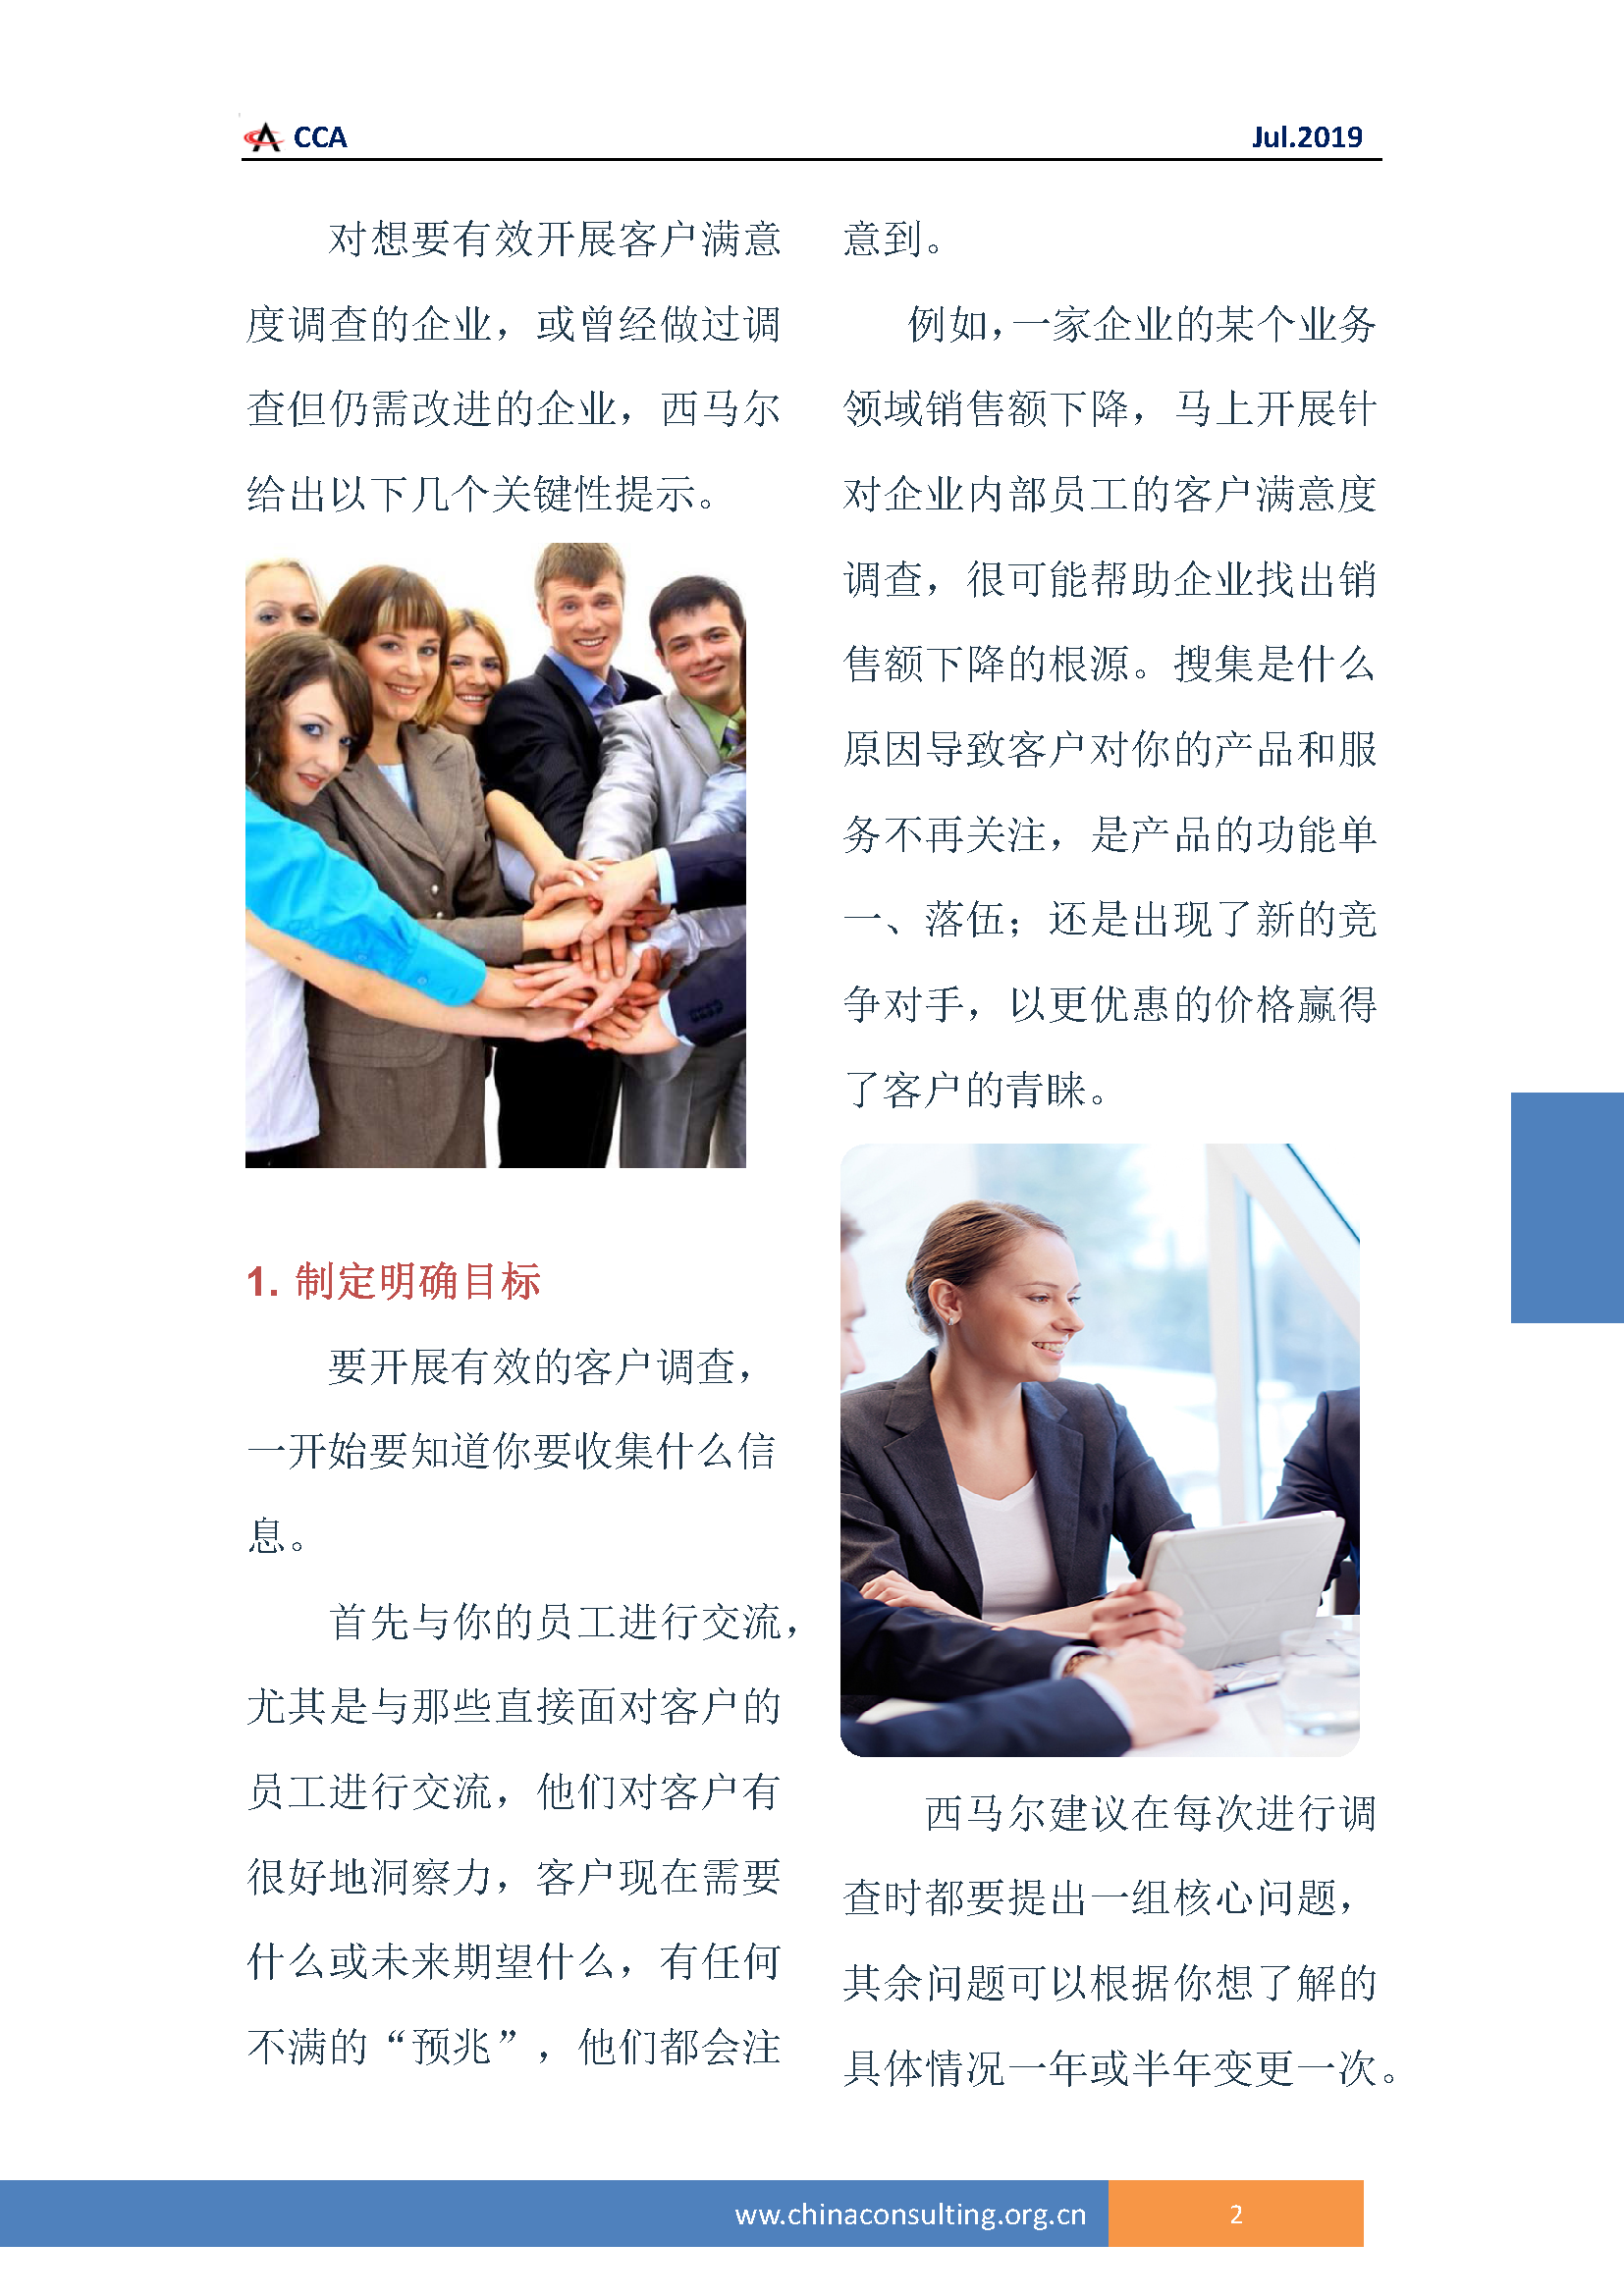 中国科技咨询协会国际快讯（第三十二期）_页面_05.png